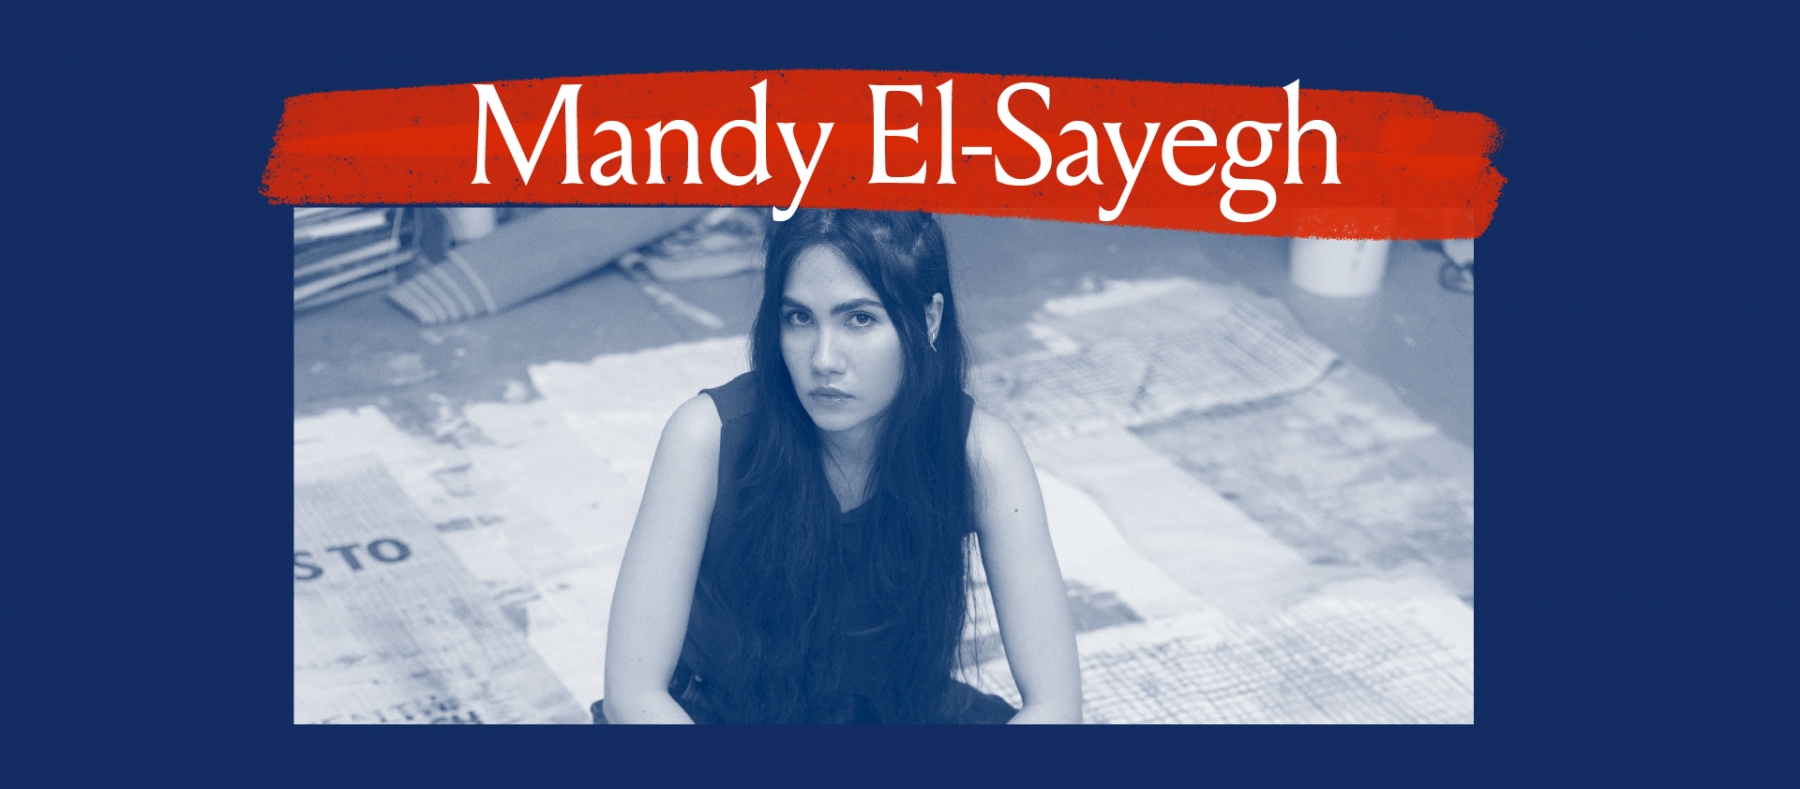 Mandy El-Sayegh Portrait Banner